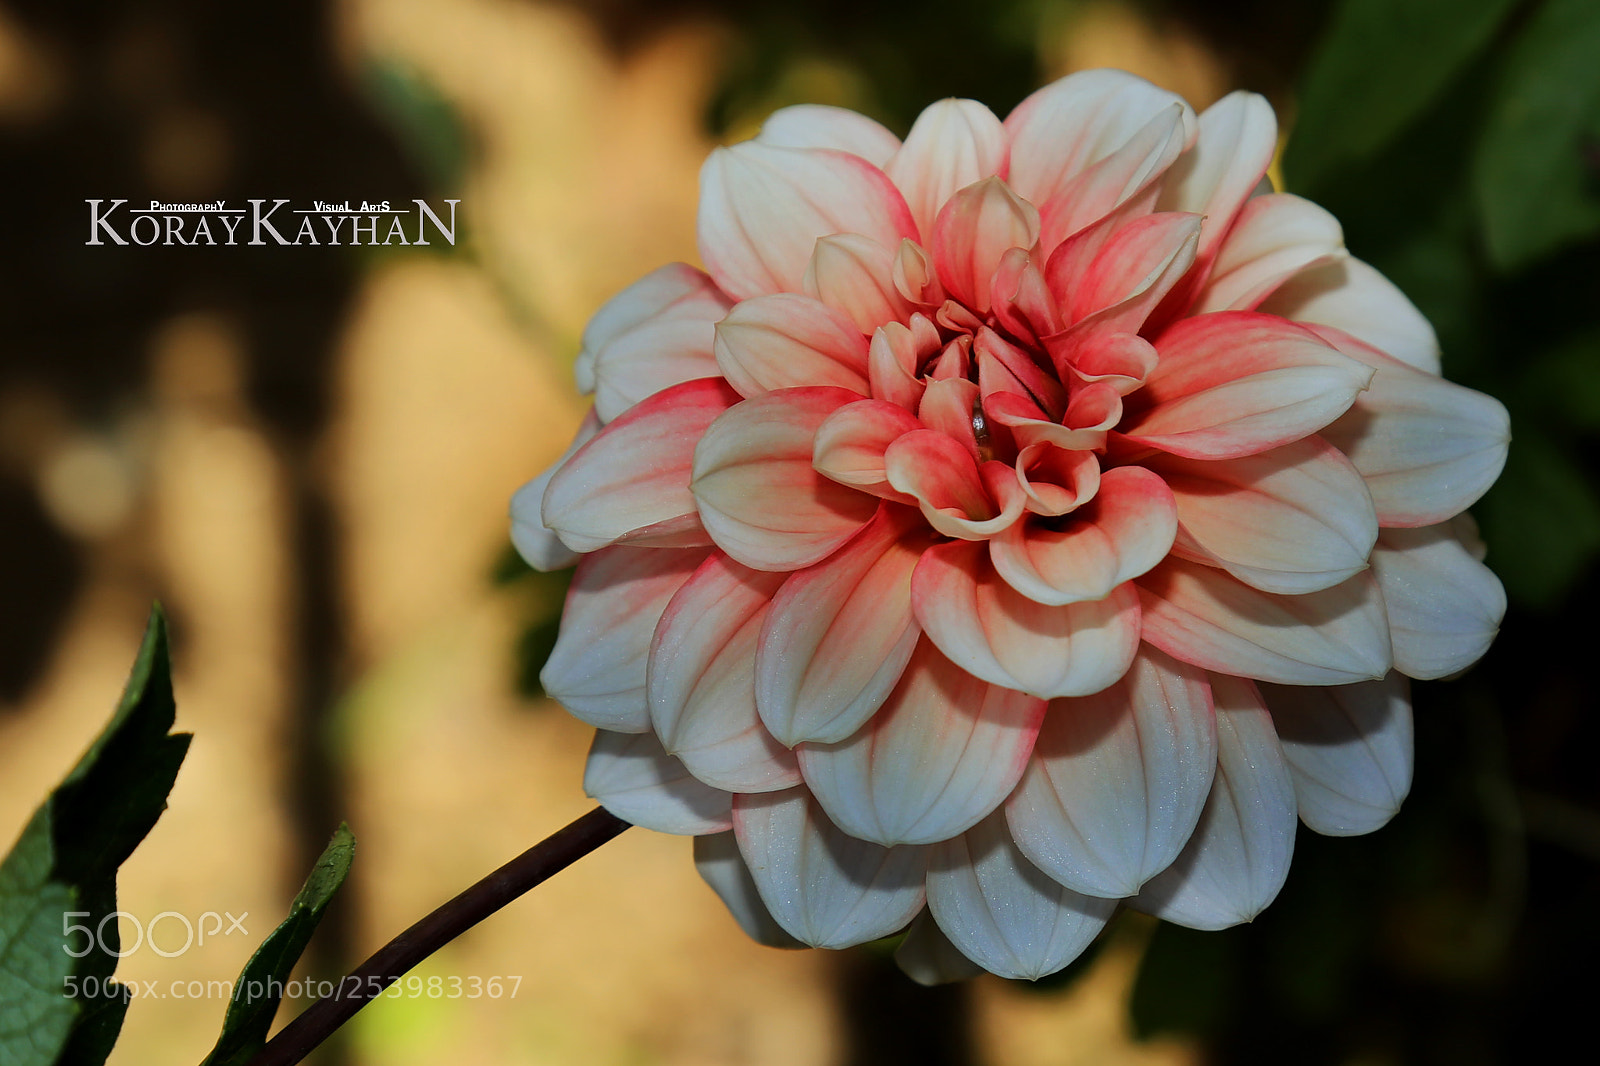 Canon EOS 6D sample photo. Dahlia flower photography